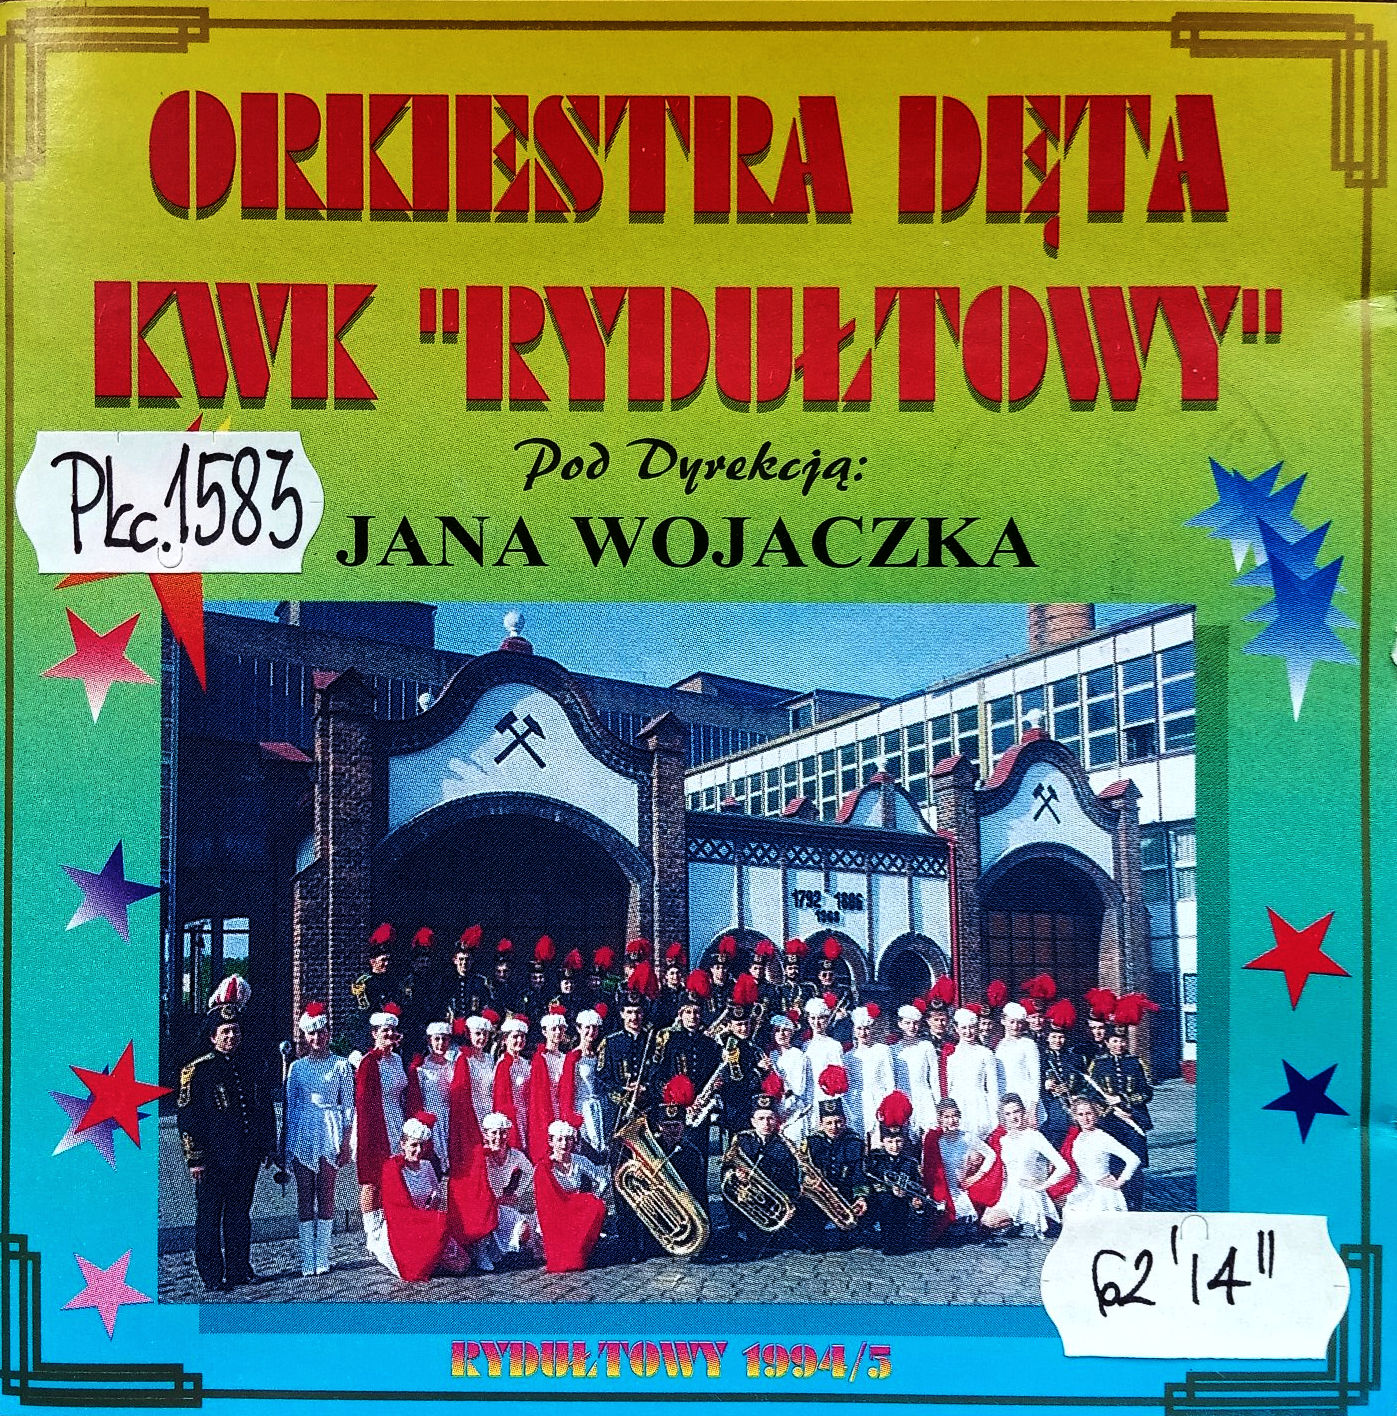 ORKIESTRA DĘTA KWK RYDUŁTOWY - Orkiestra Dęta KWK Rydułtowy - Rydułtowy 1994-5